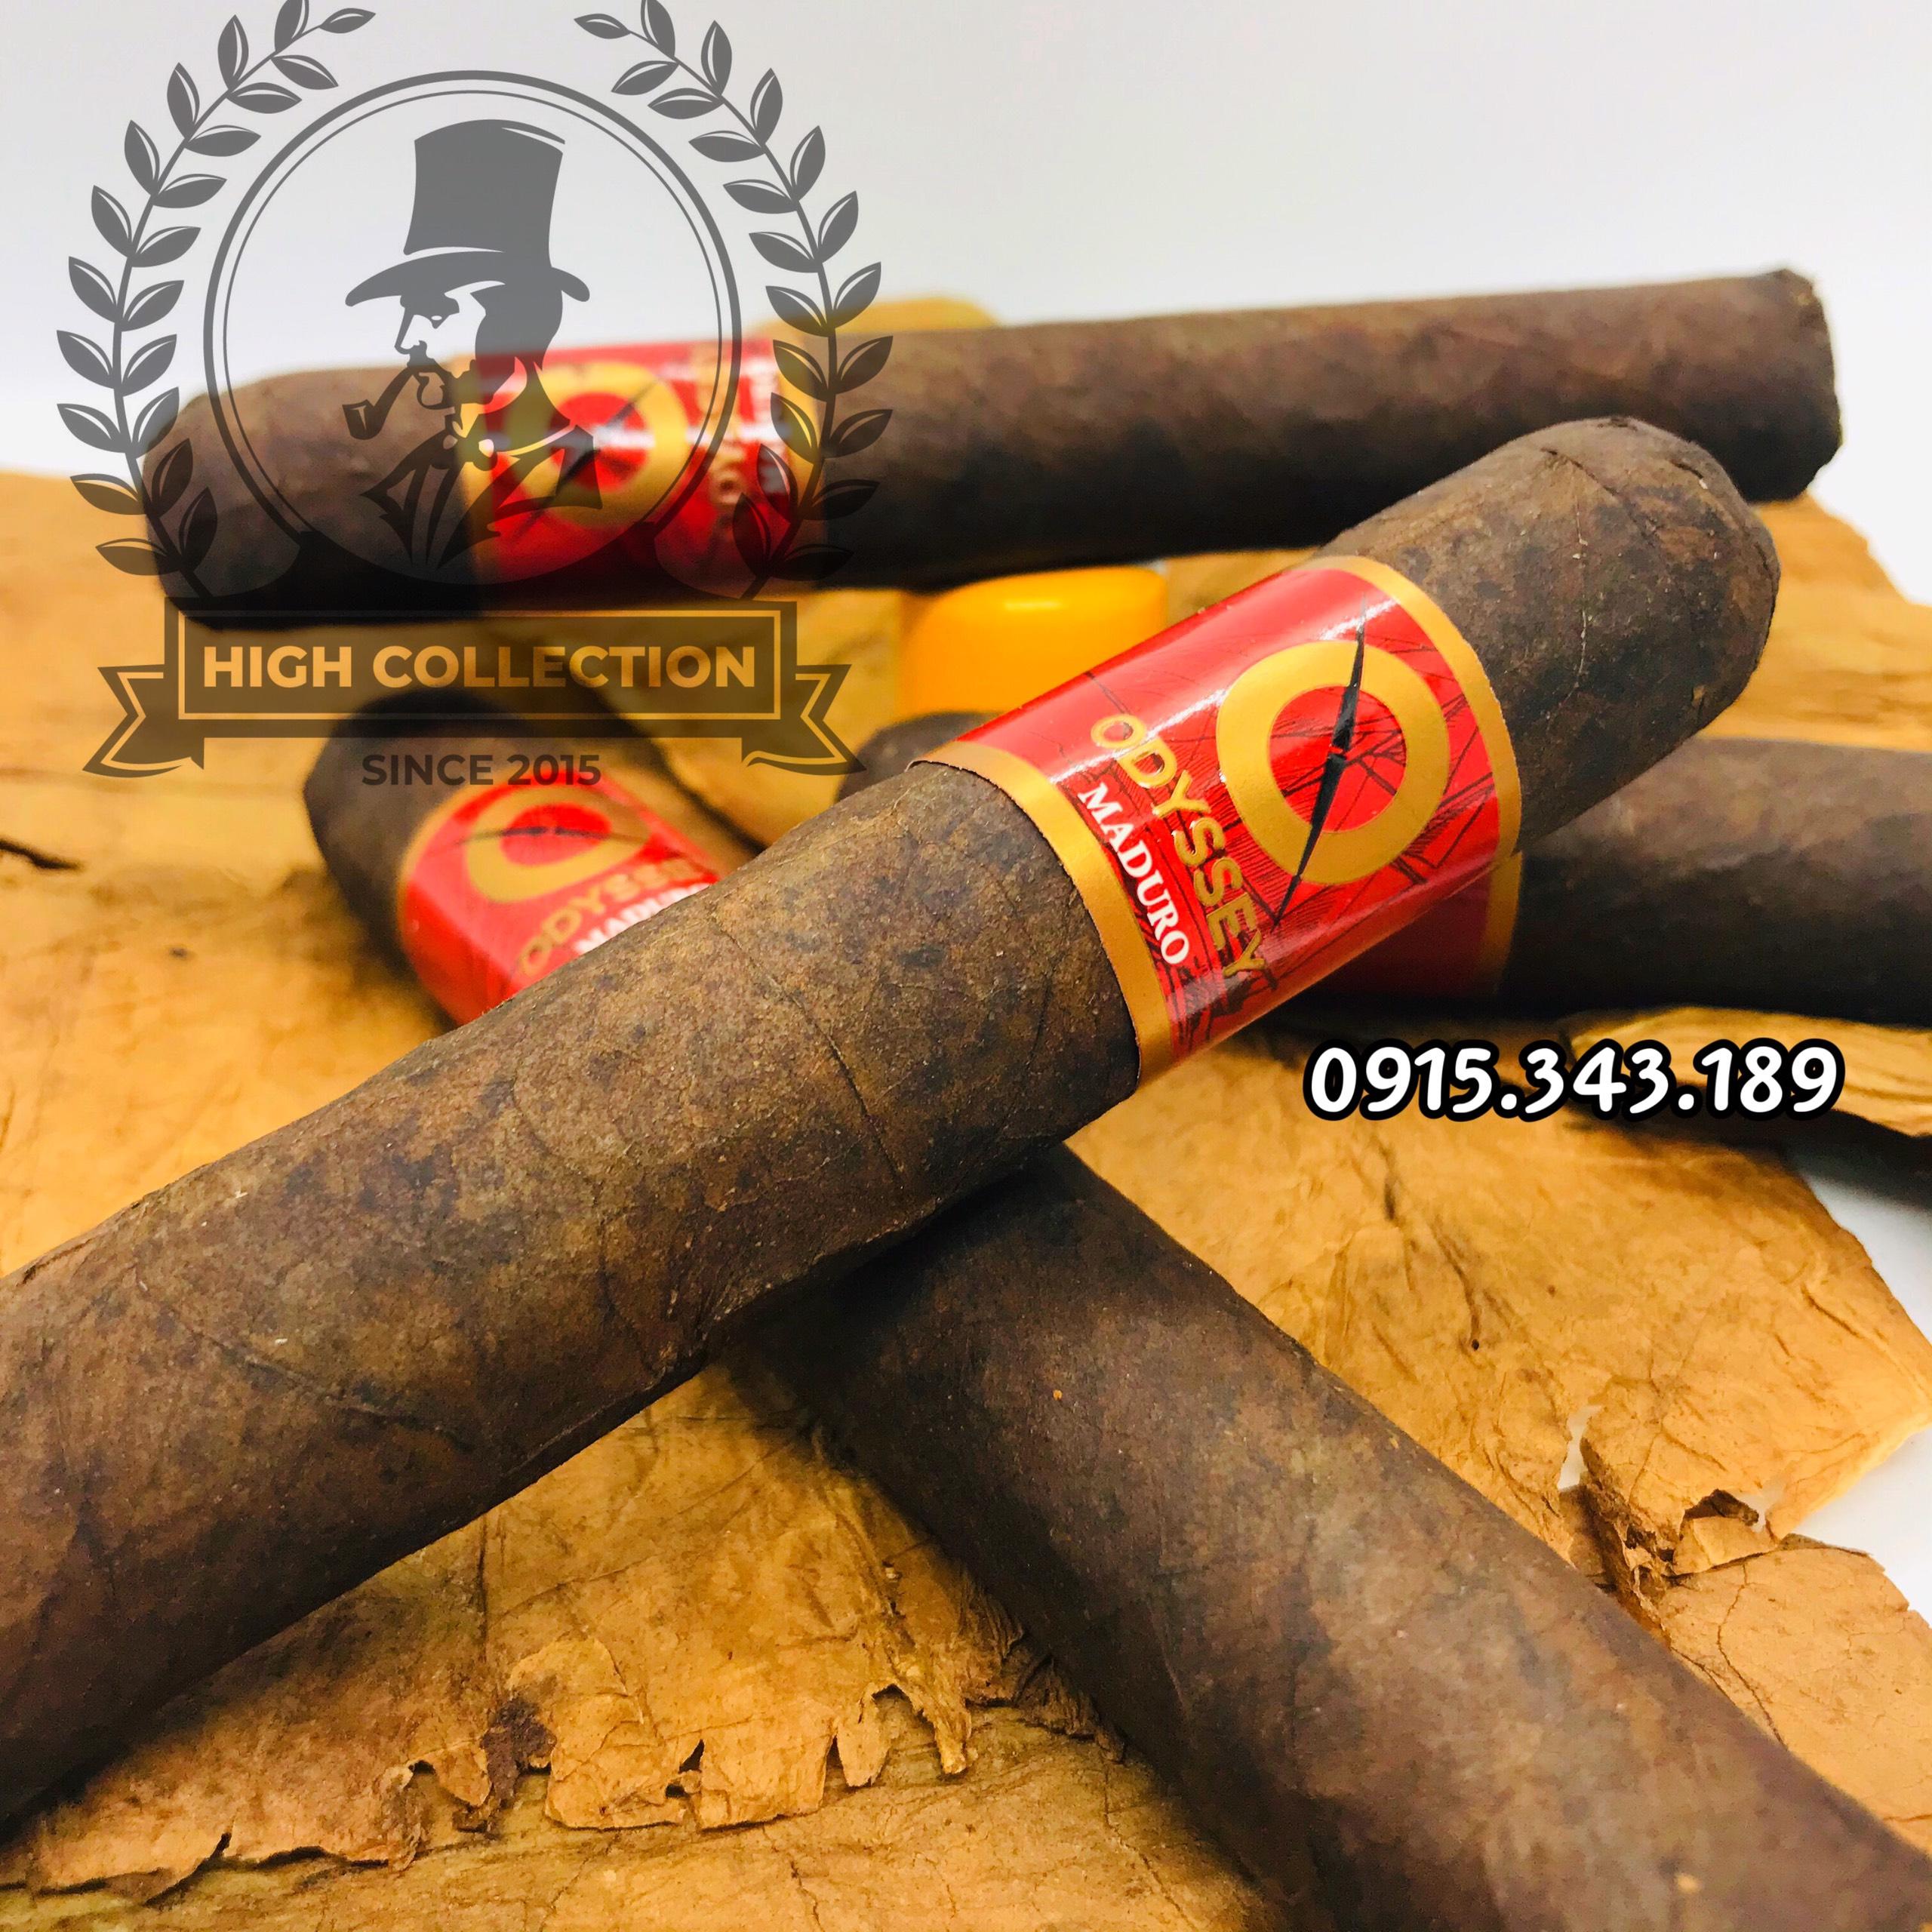 Cigar Odysey 20 Product Of Nicaragua 2